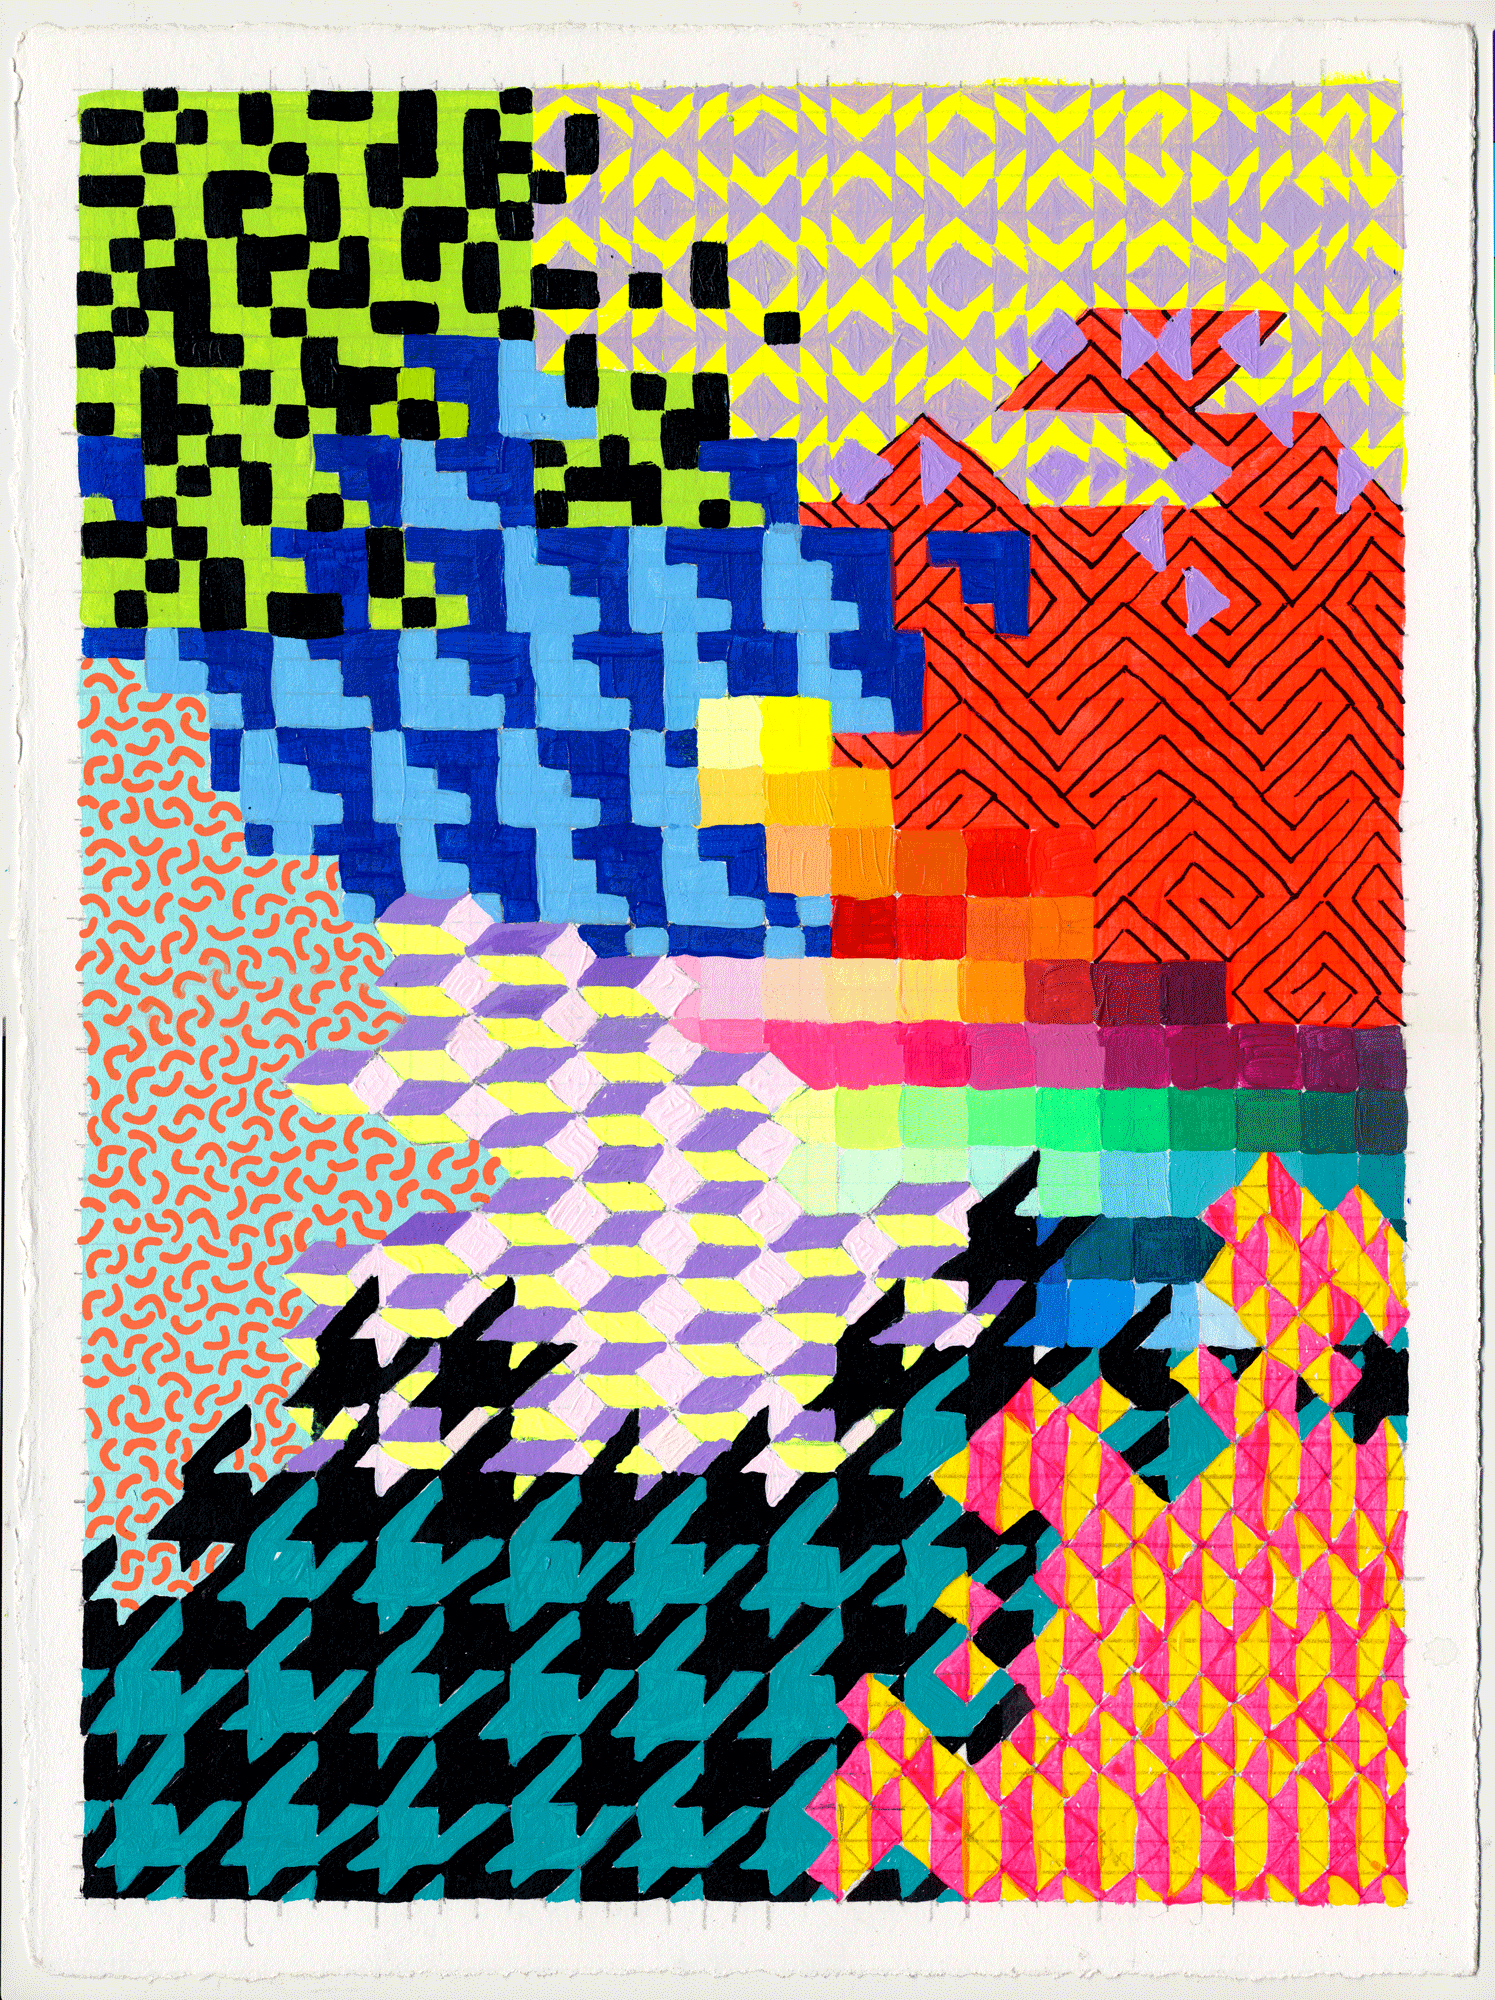  NY1826, 15" X 11", acrylic on paper, 2018  